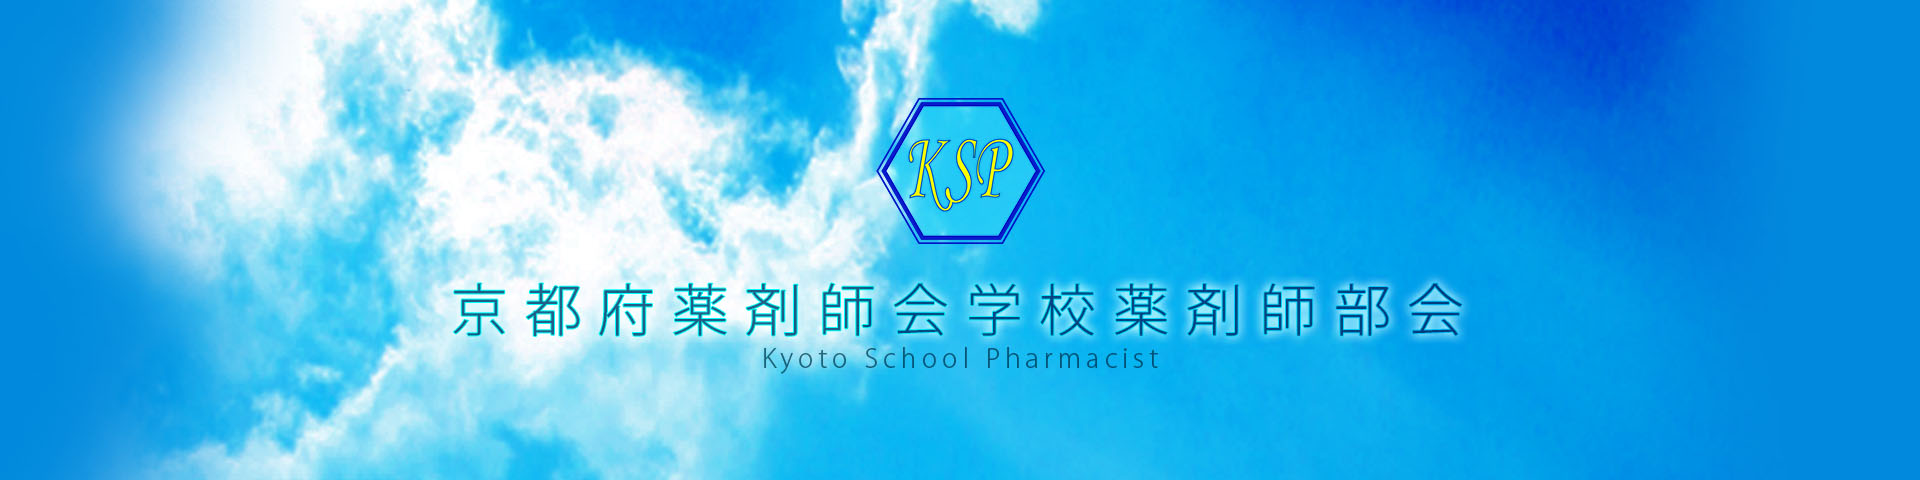 京都府薬剤師会学校薬剤師部会